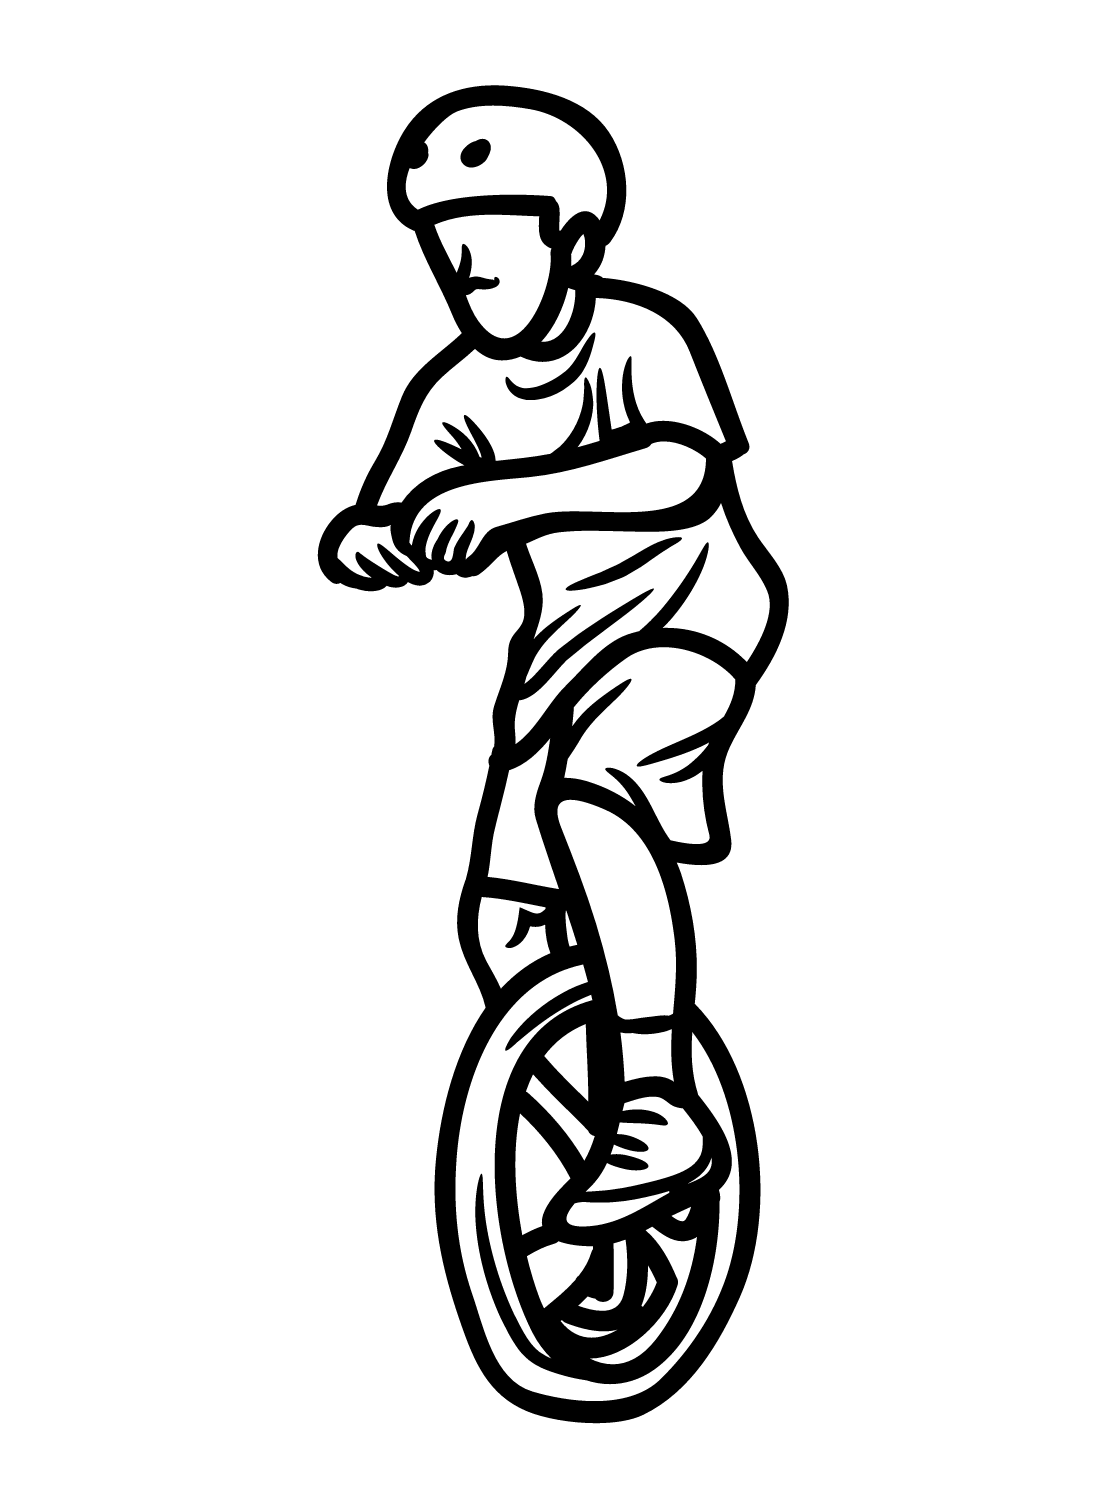 صبي مع الدراجة الهوائية الأحادية العجلة من الدراجة الهوائية الأحادية العجلة